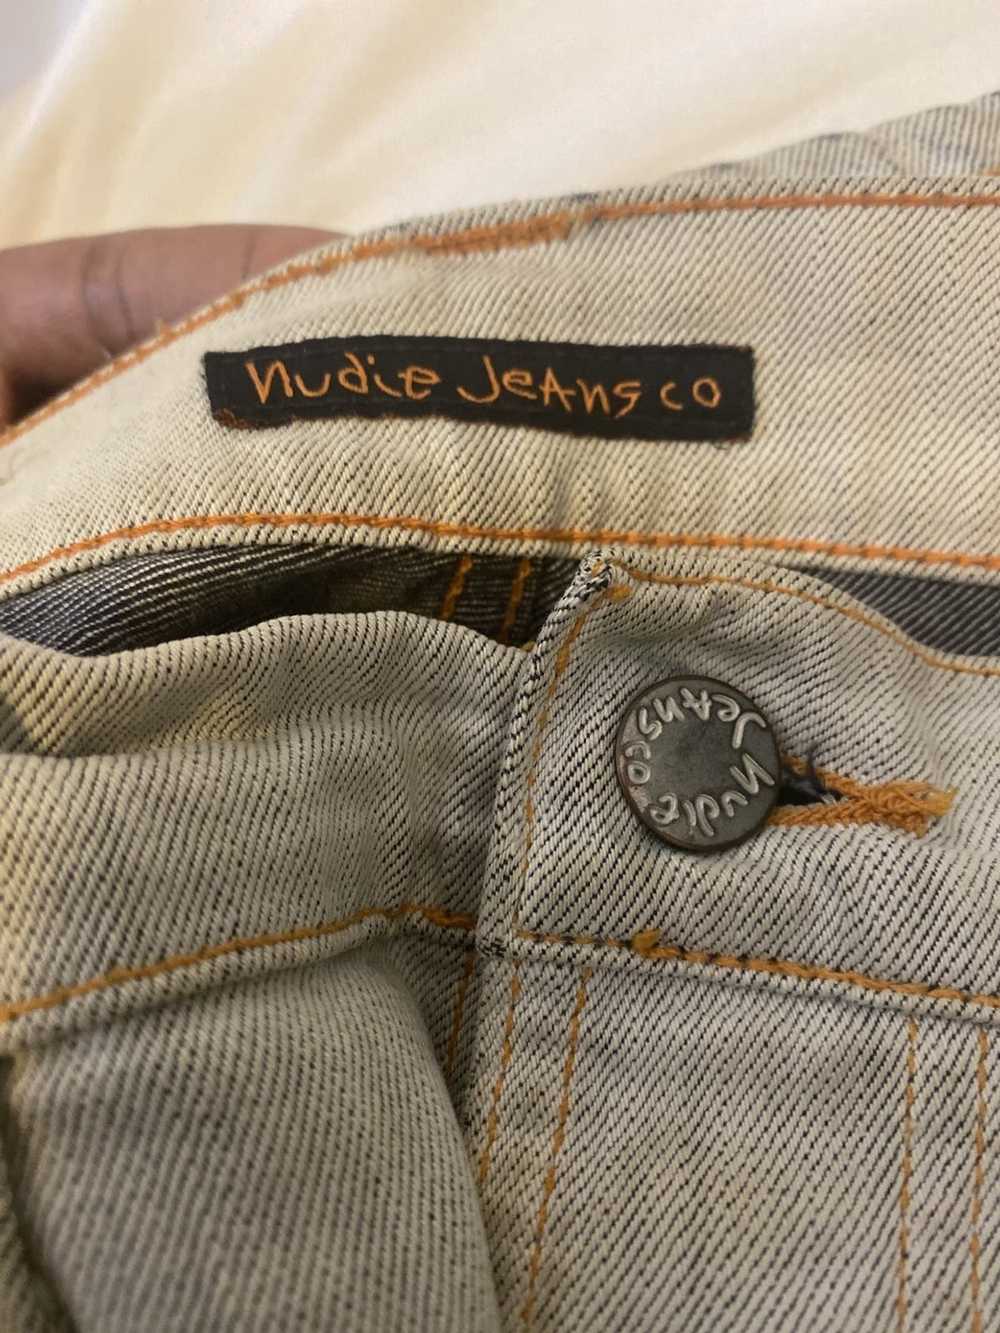 Nudie Jeans Nudie jeans - image 2